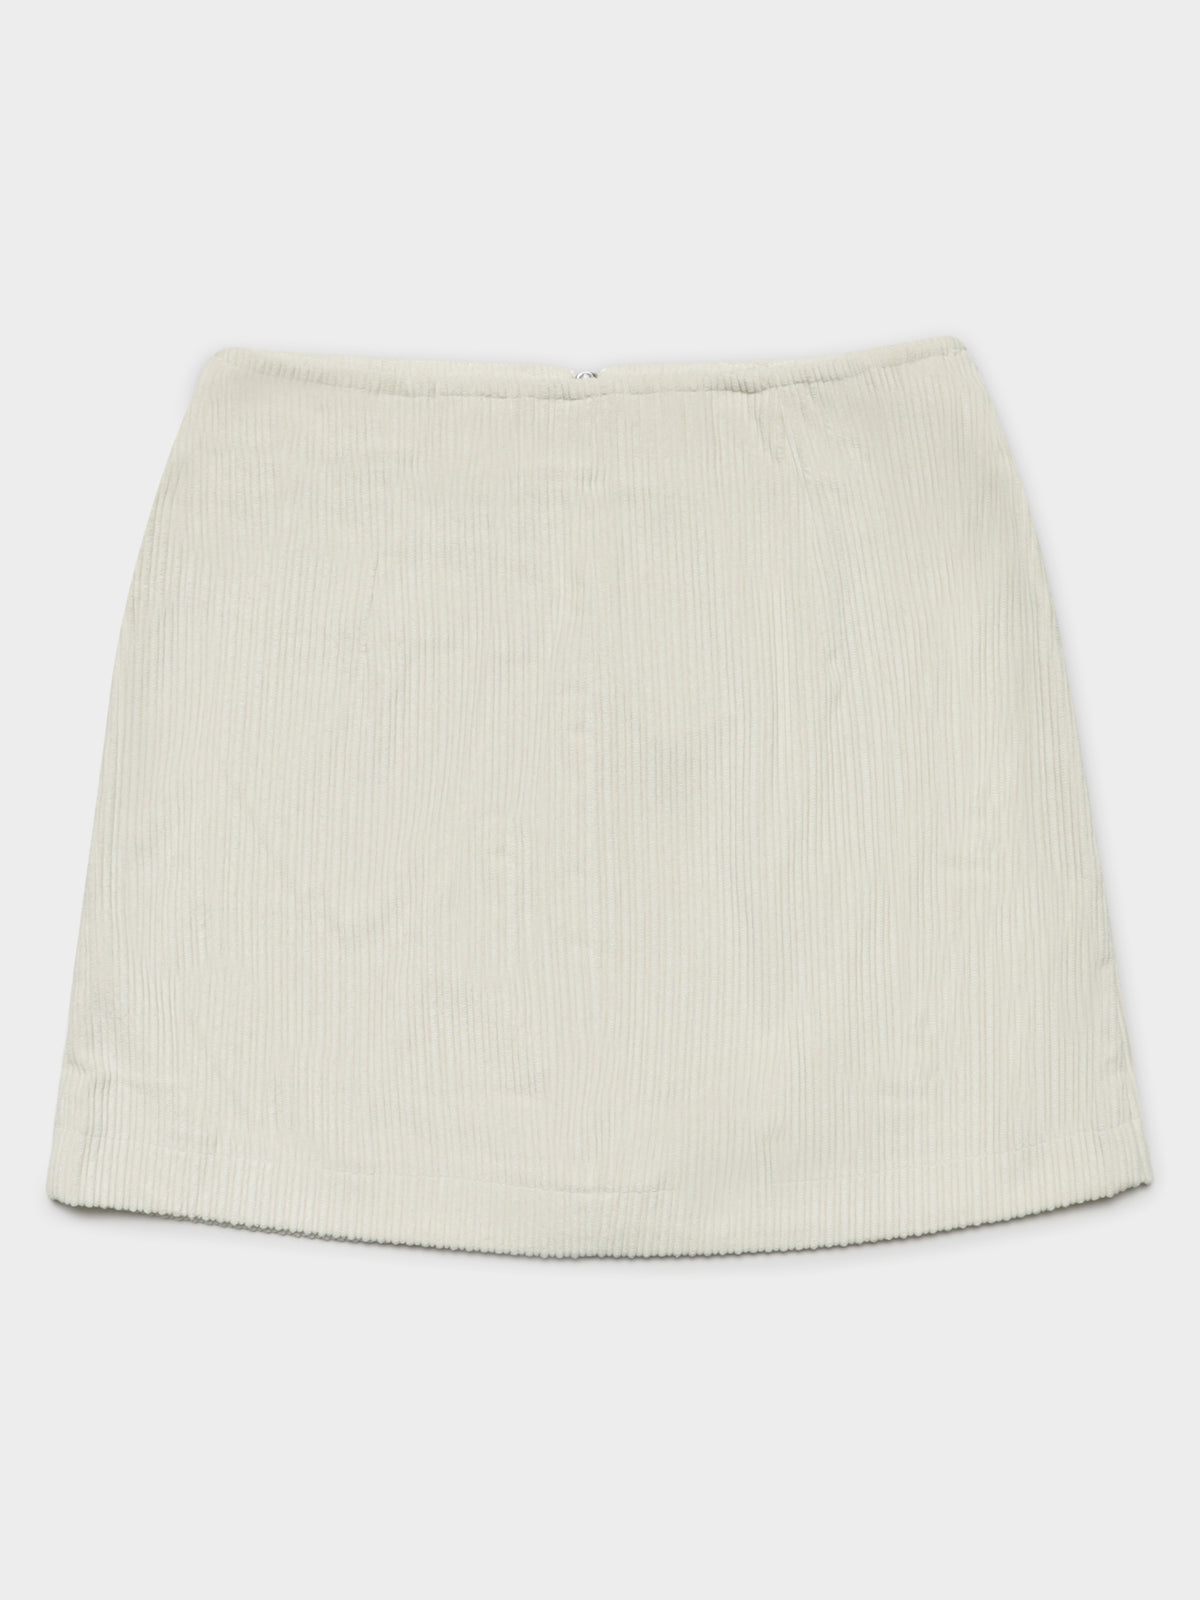 Imogen Skirt In White